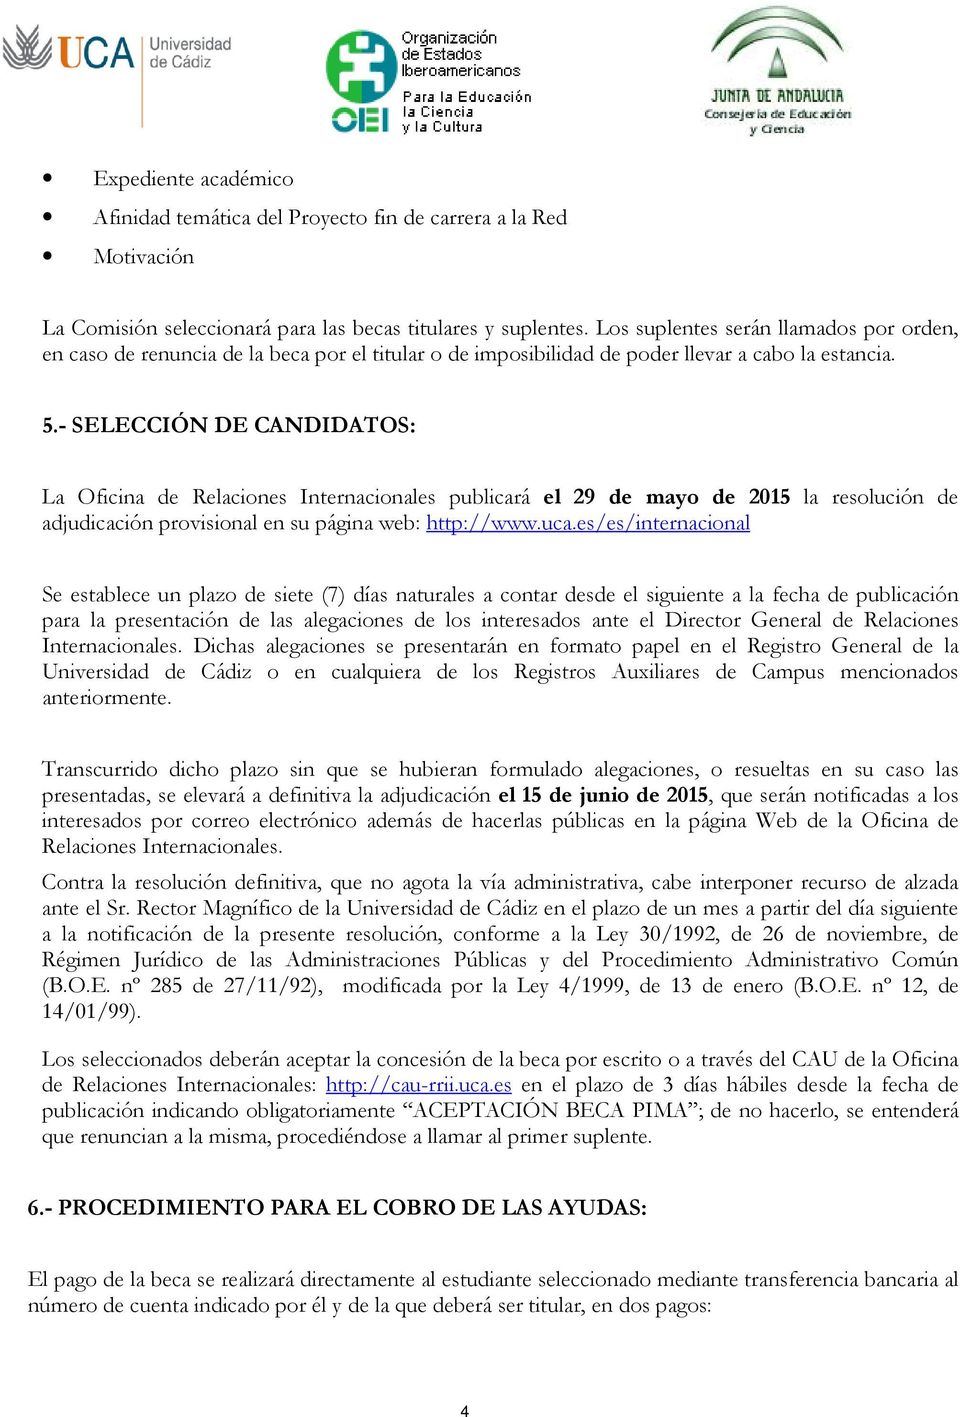 - SELECCIÓN DE CANDIDATOS: La Oficina de Relaciones Internacionales publicará el 29 de mayo de 2015 la resolución de adjudicación provisional en su página web: http://www.uca.